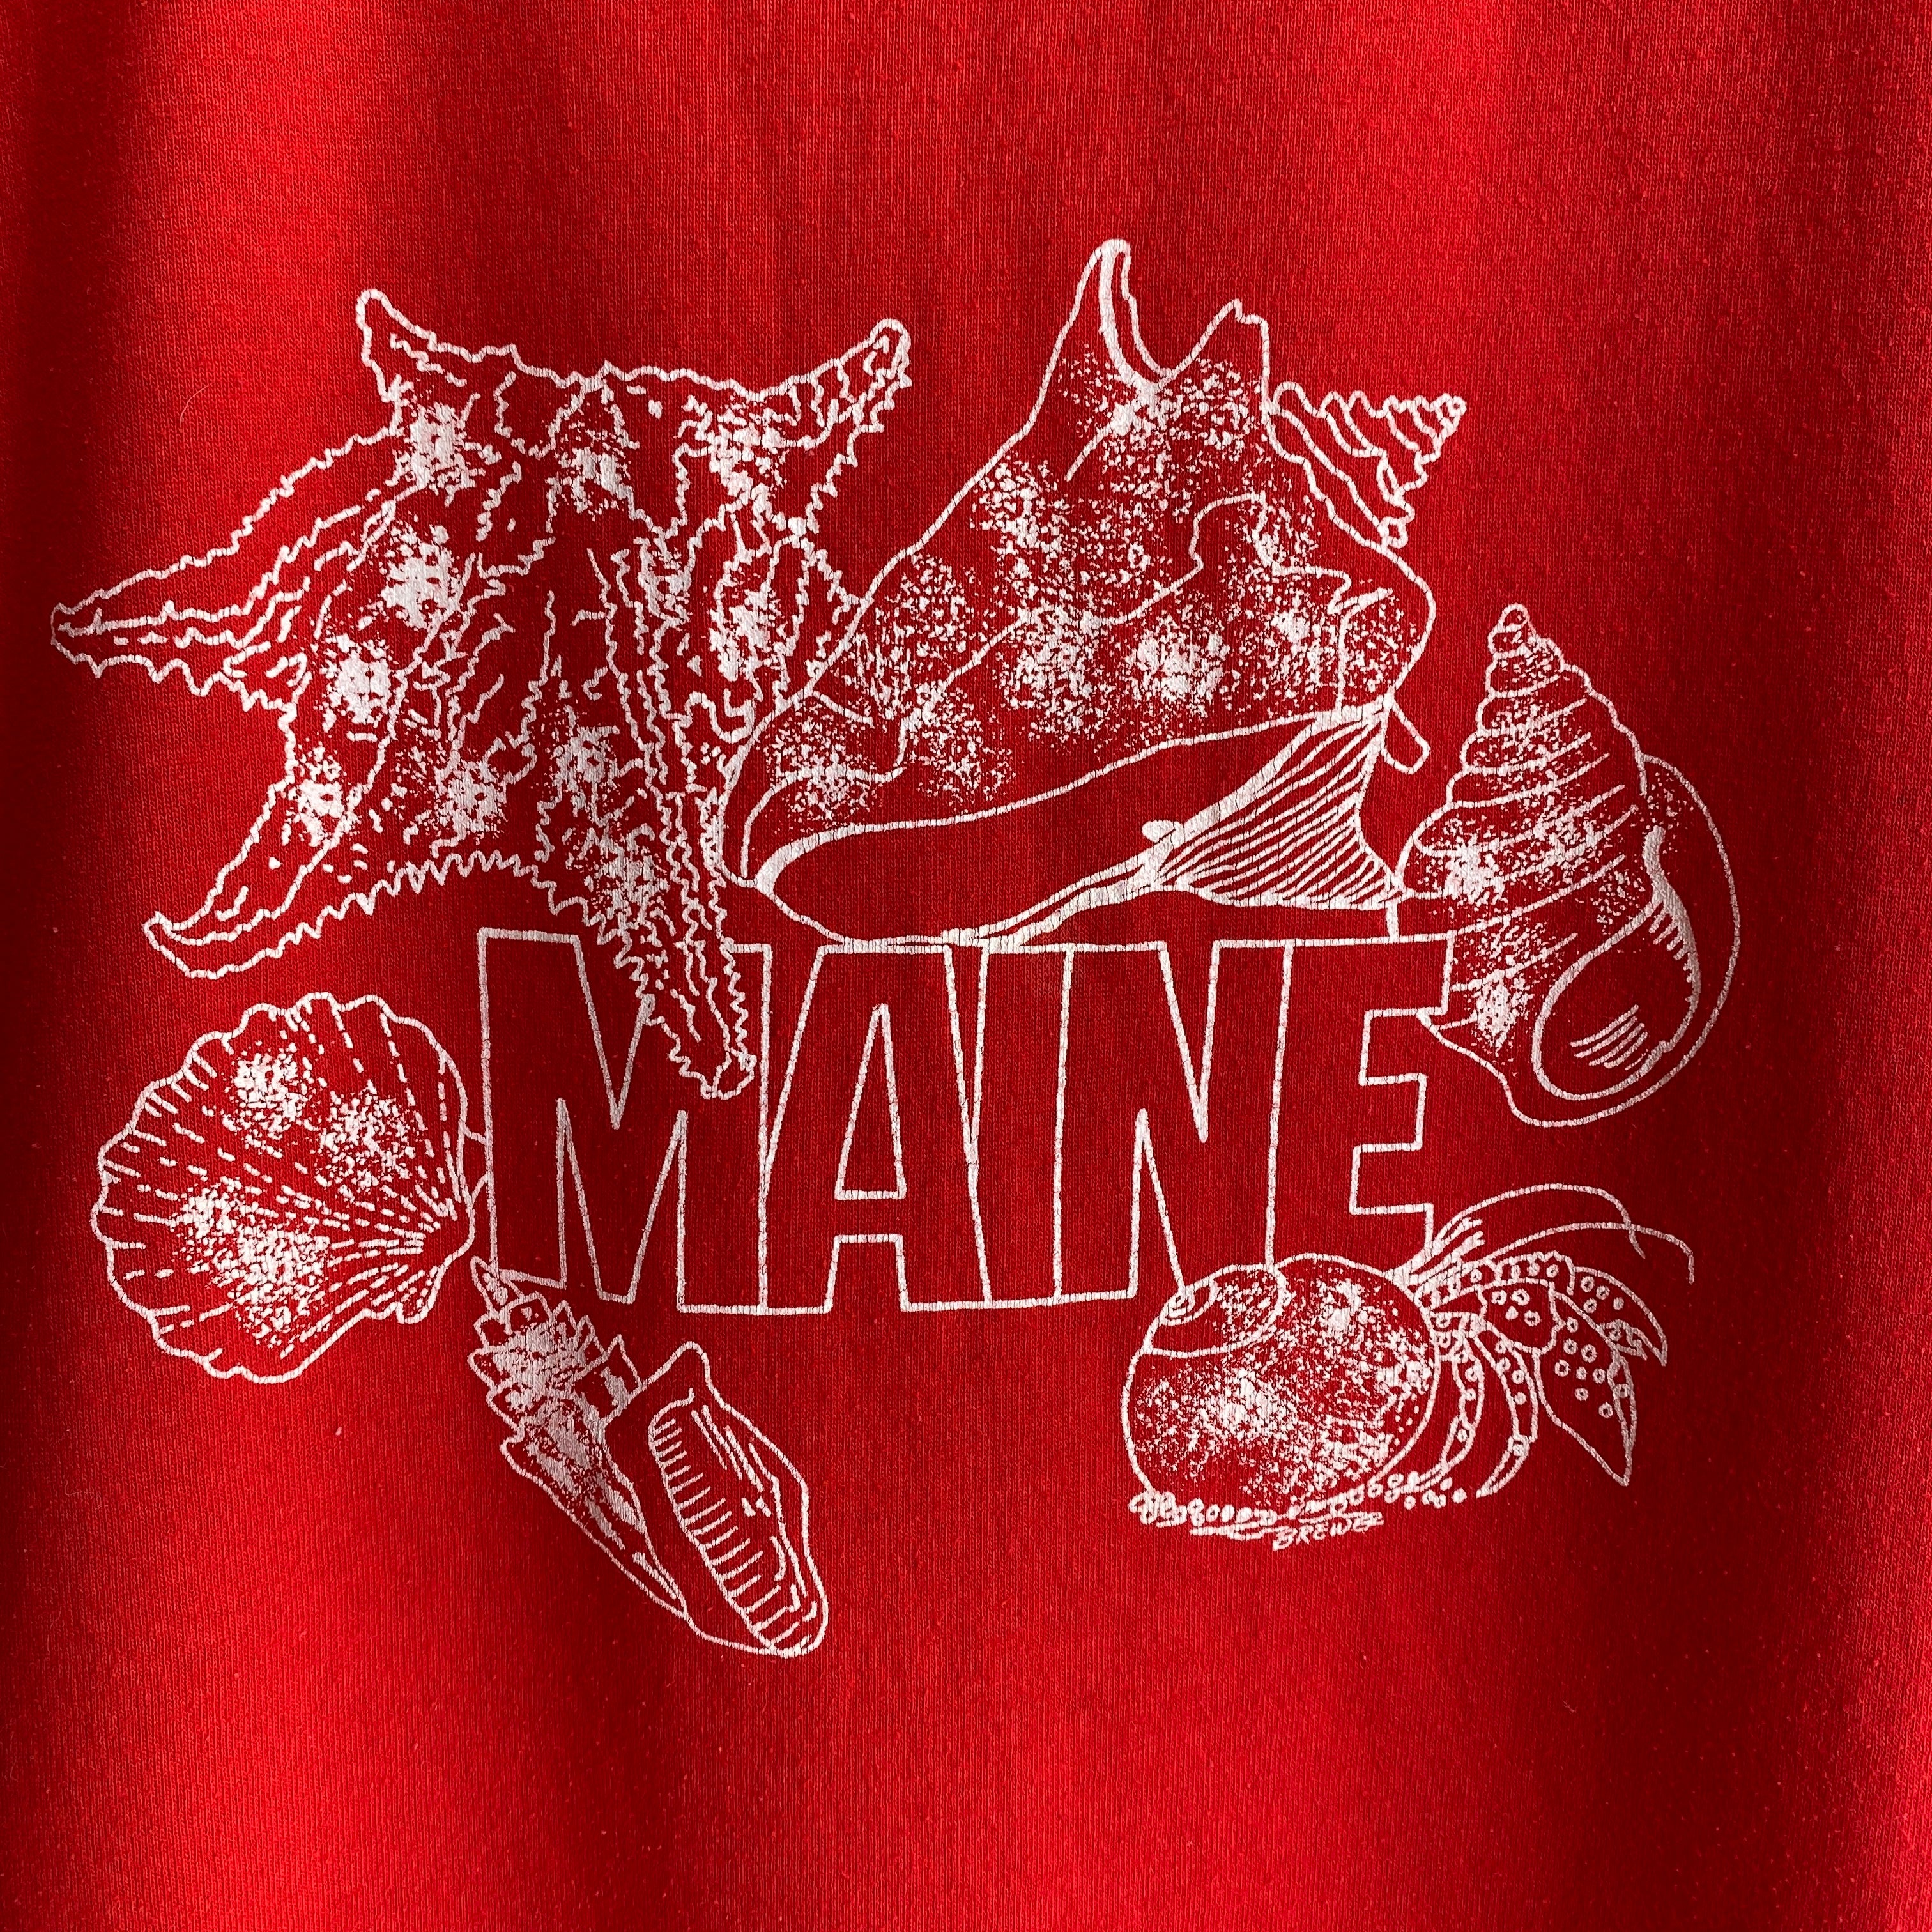 1988 Maine Touriste T-shirt